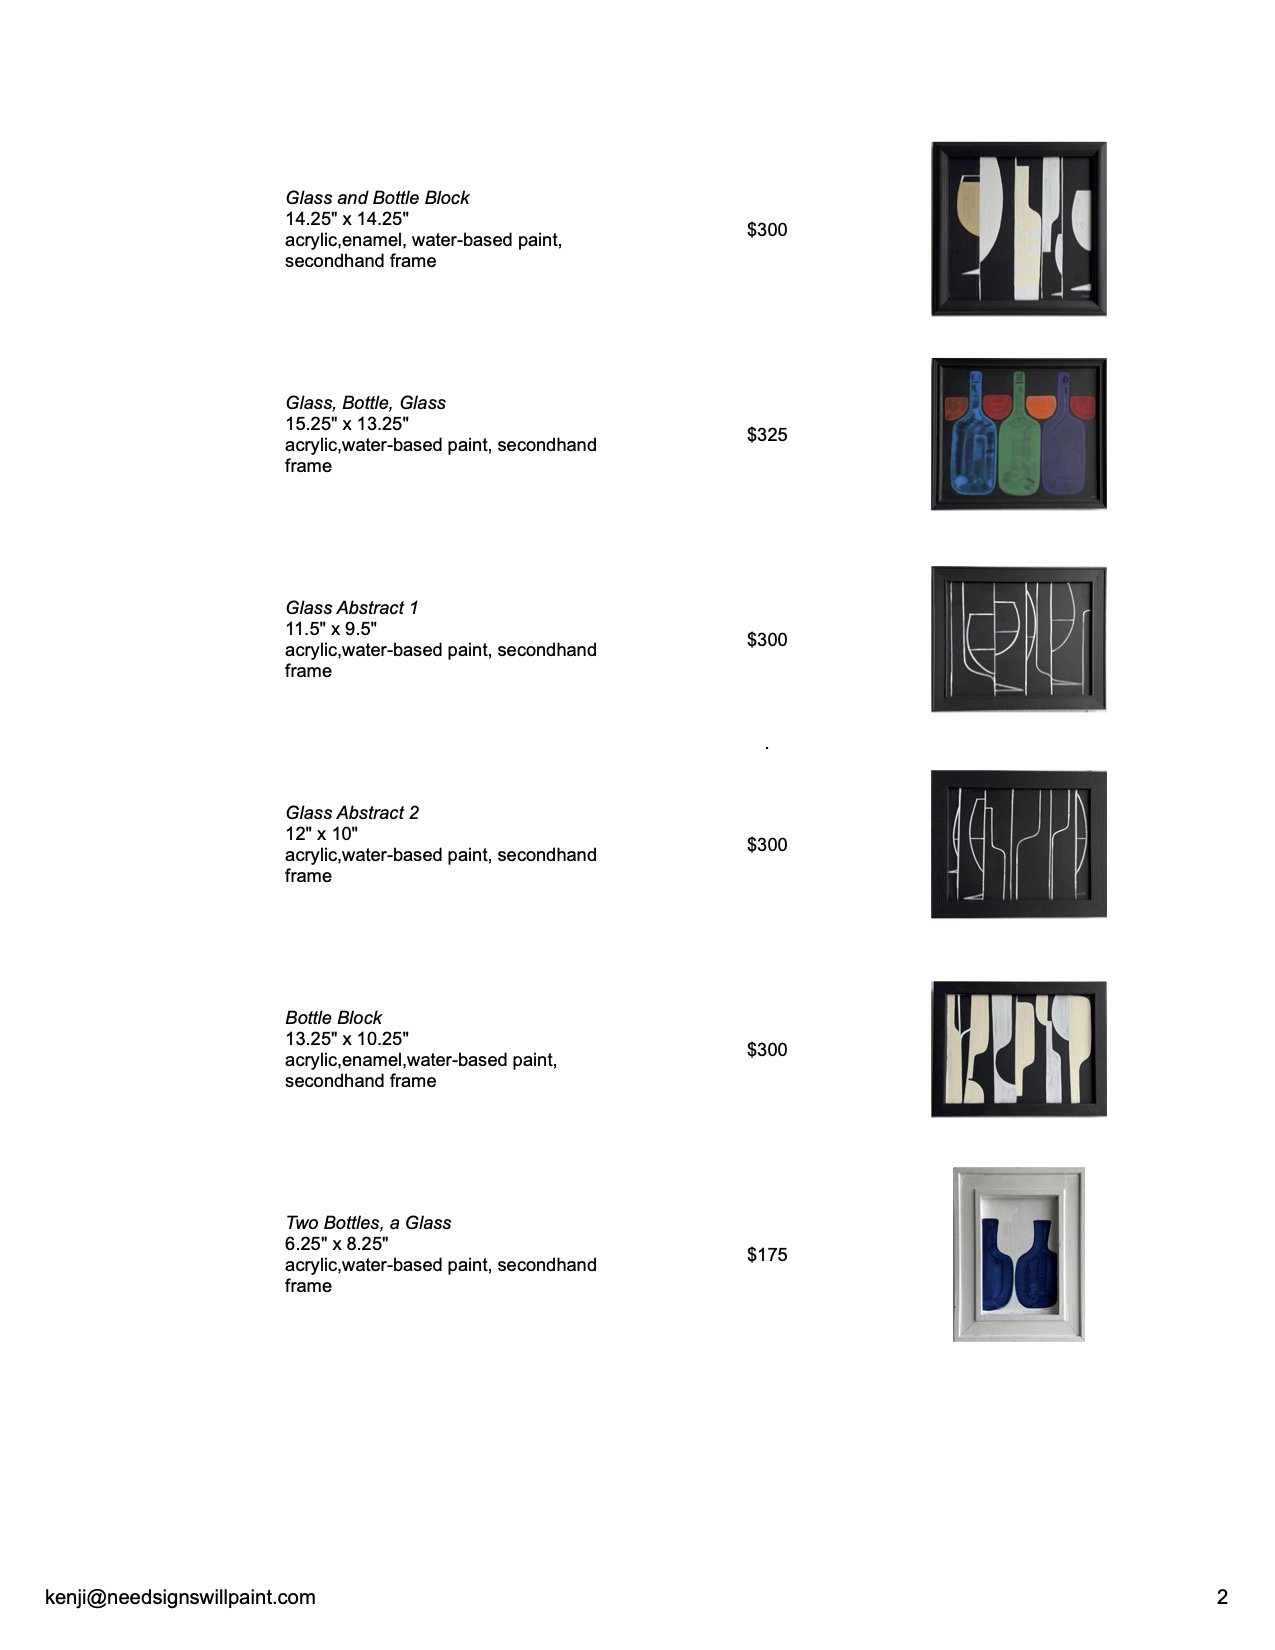 Pricelist - New Paintings at Gray's - Sheet2.jpg